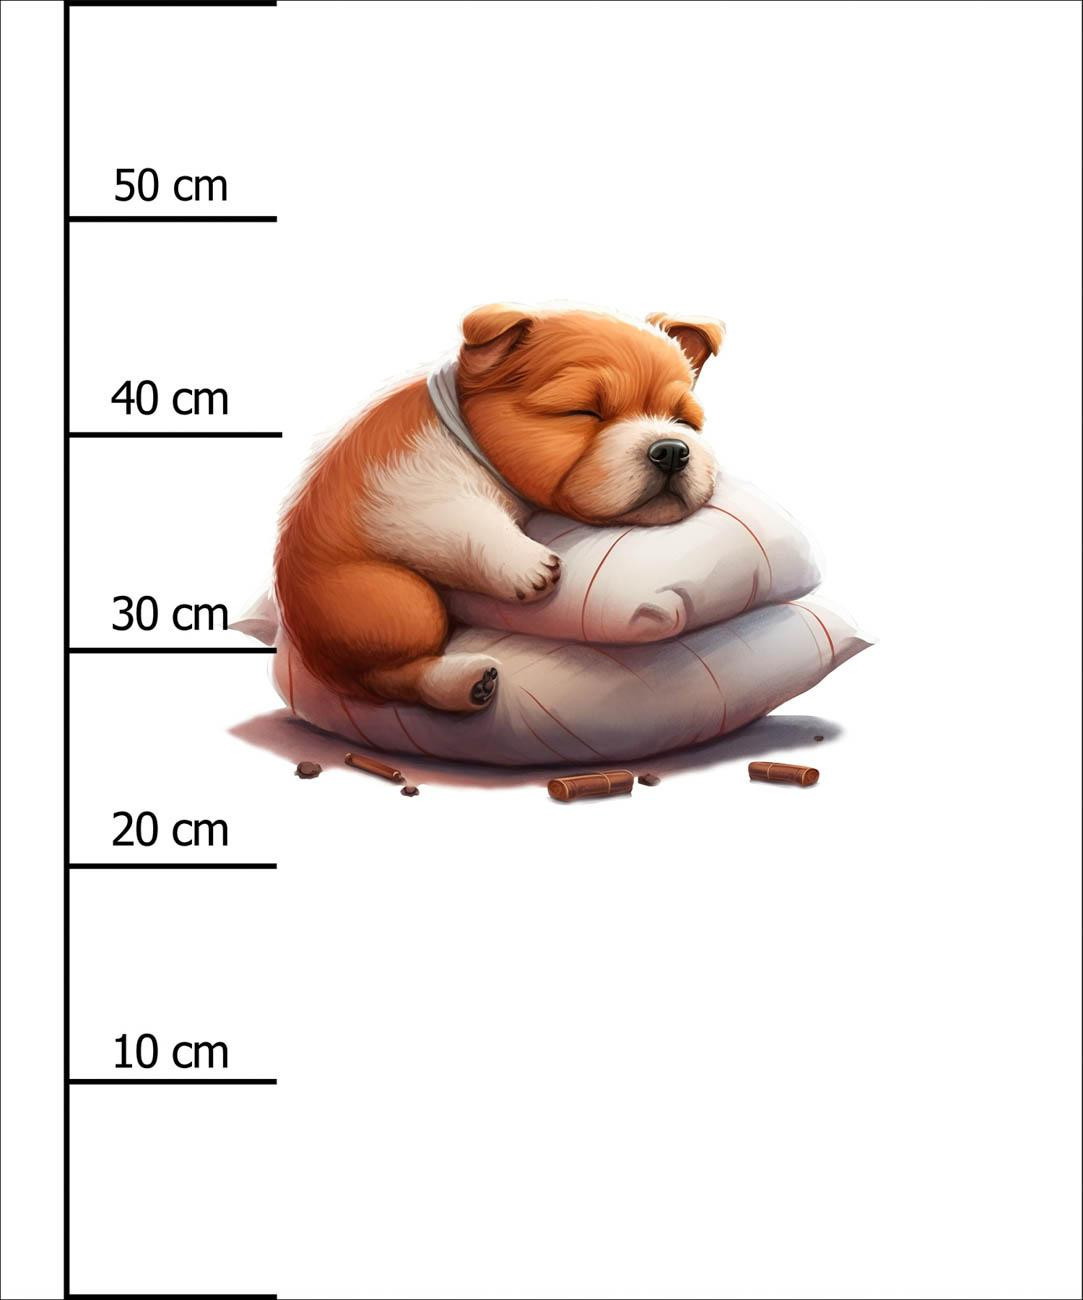 SLEEPING DOG - Paneel (60cm x 50cm)  Baumwoll Webware